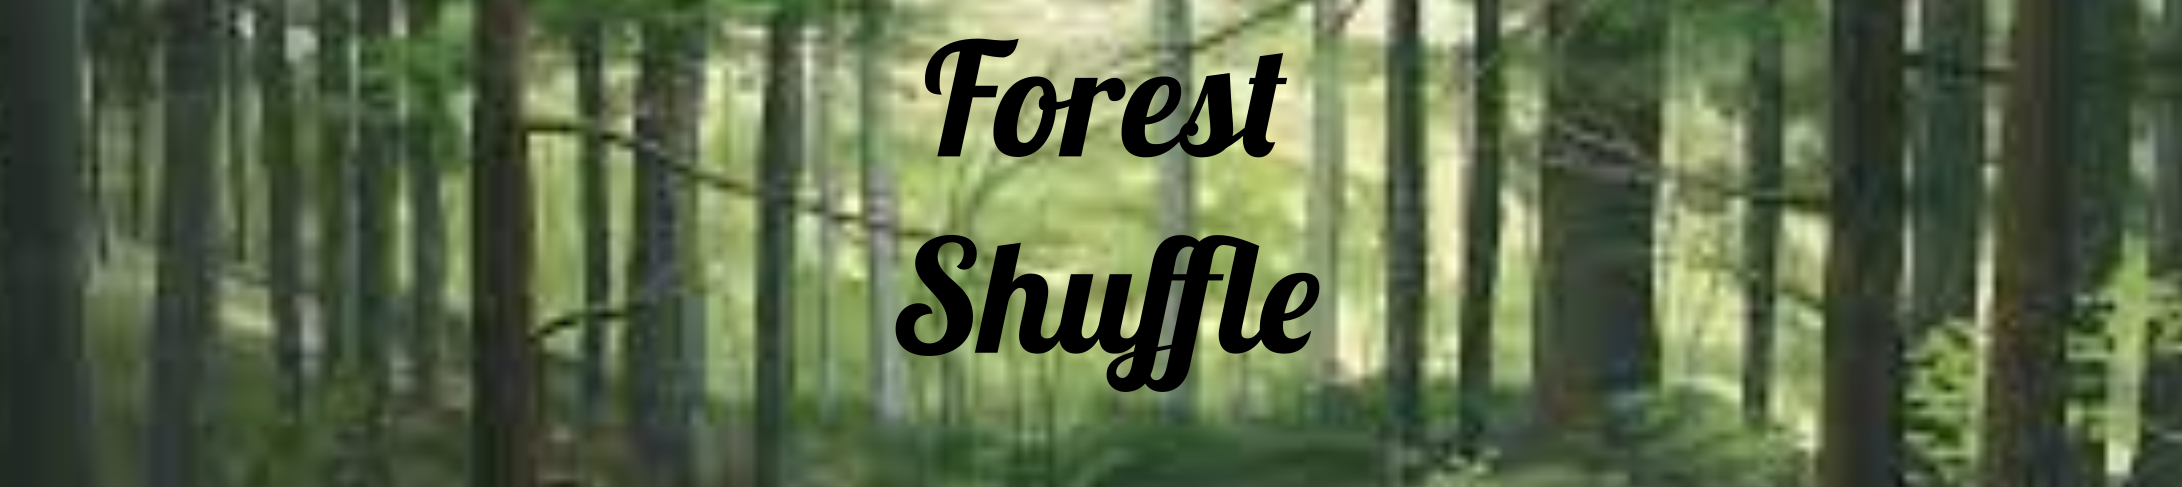 ForestShufflebanner